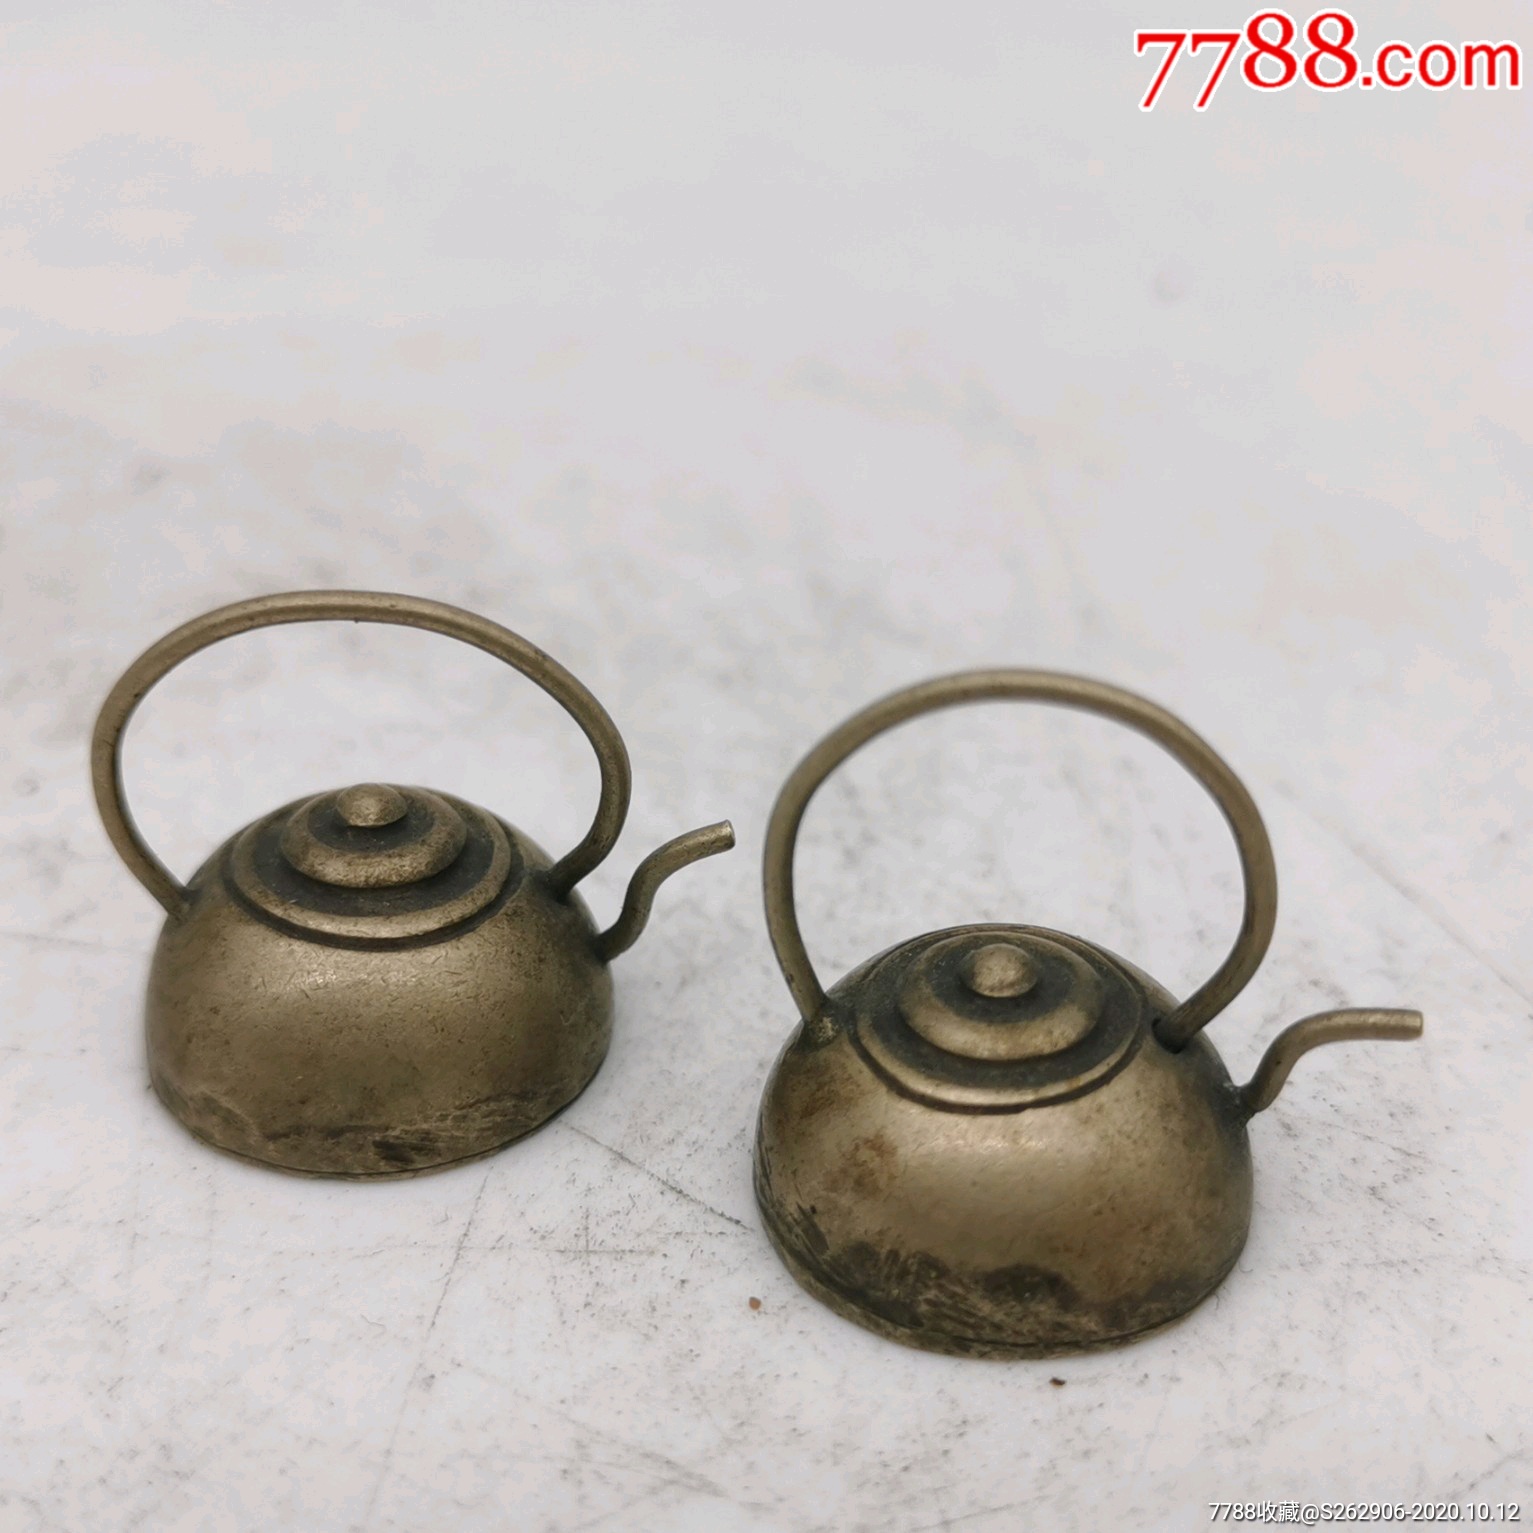 精致的老铜壶迷你铜茶壶微型铜壶小铜茶壶古玩民俗杂项老物件收藏